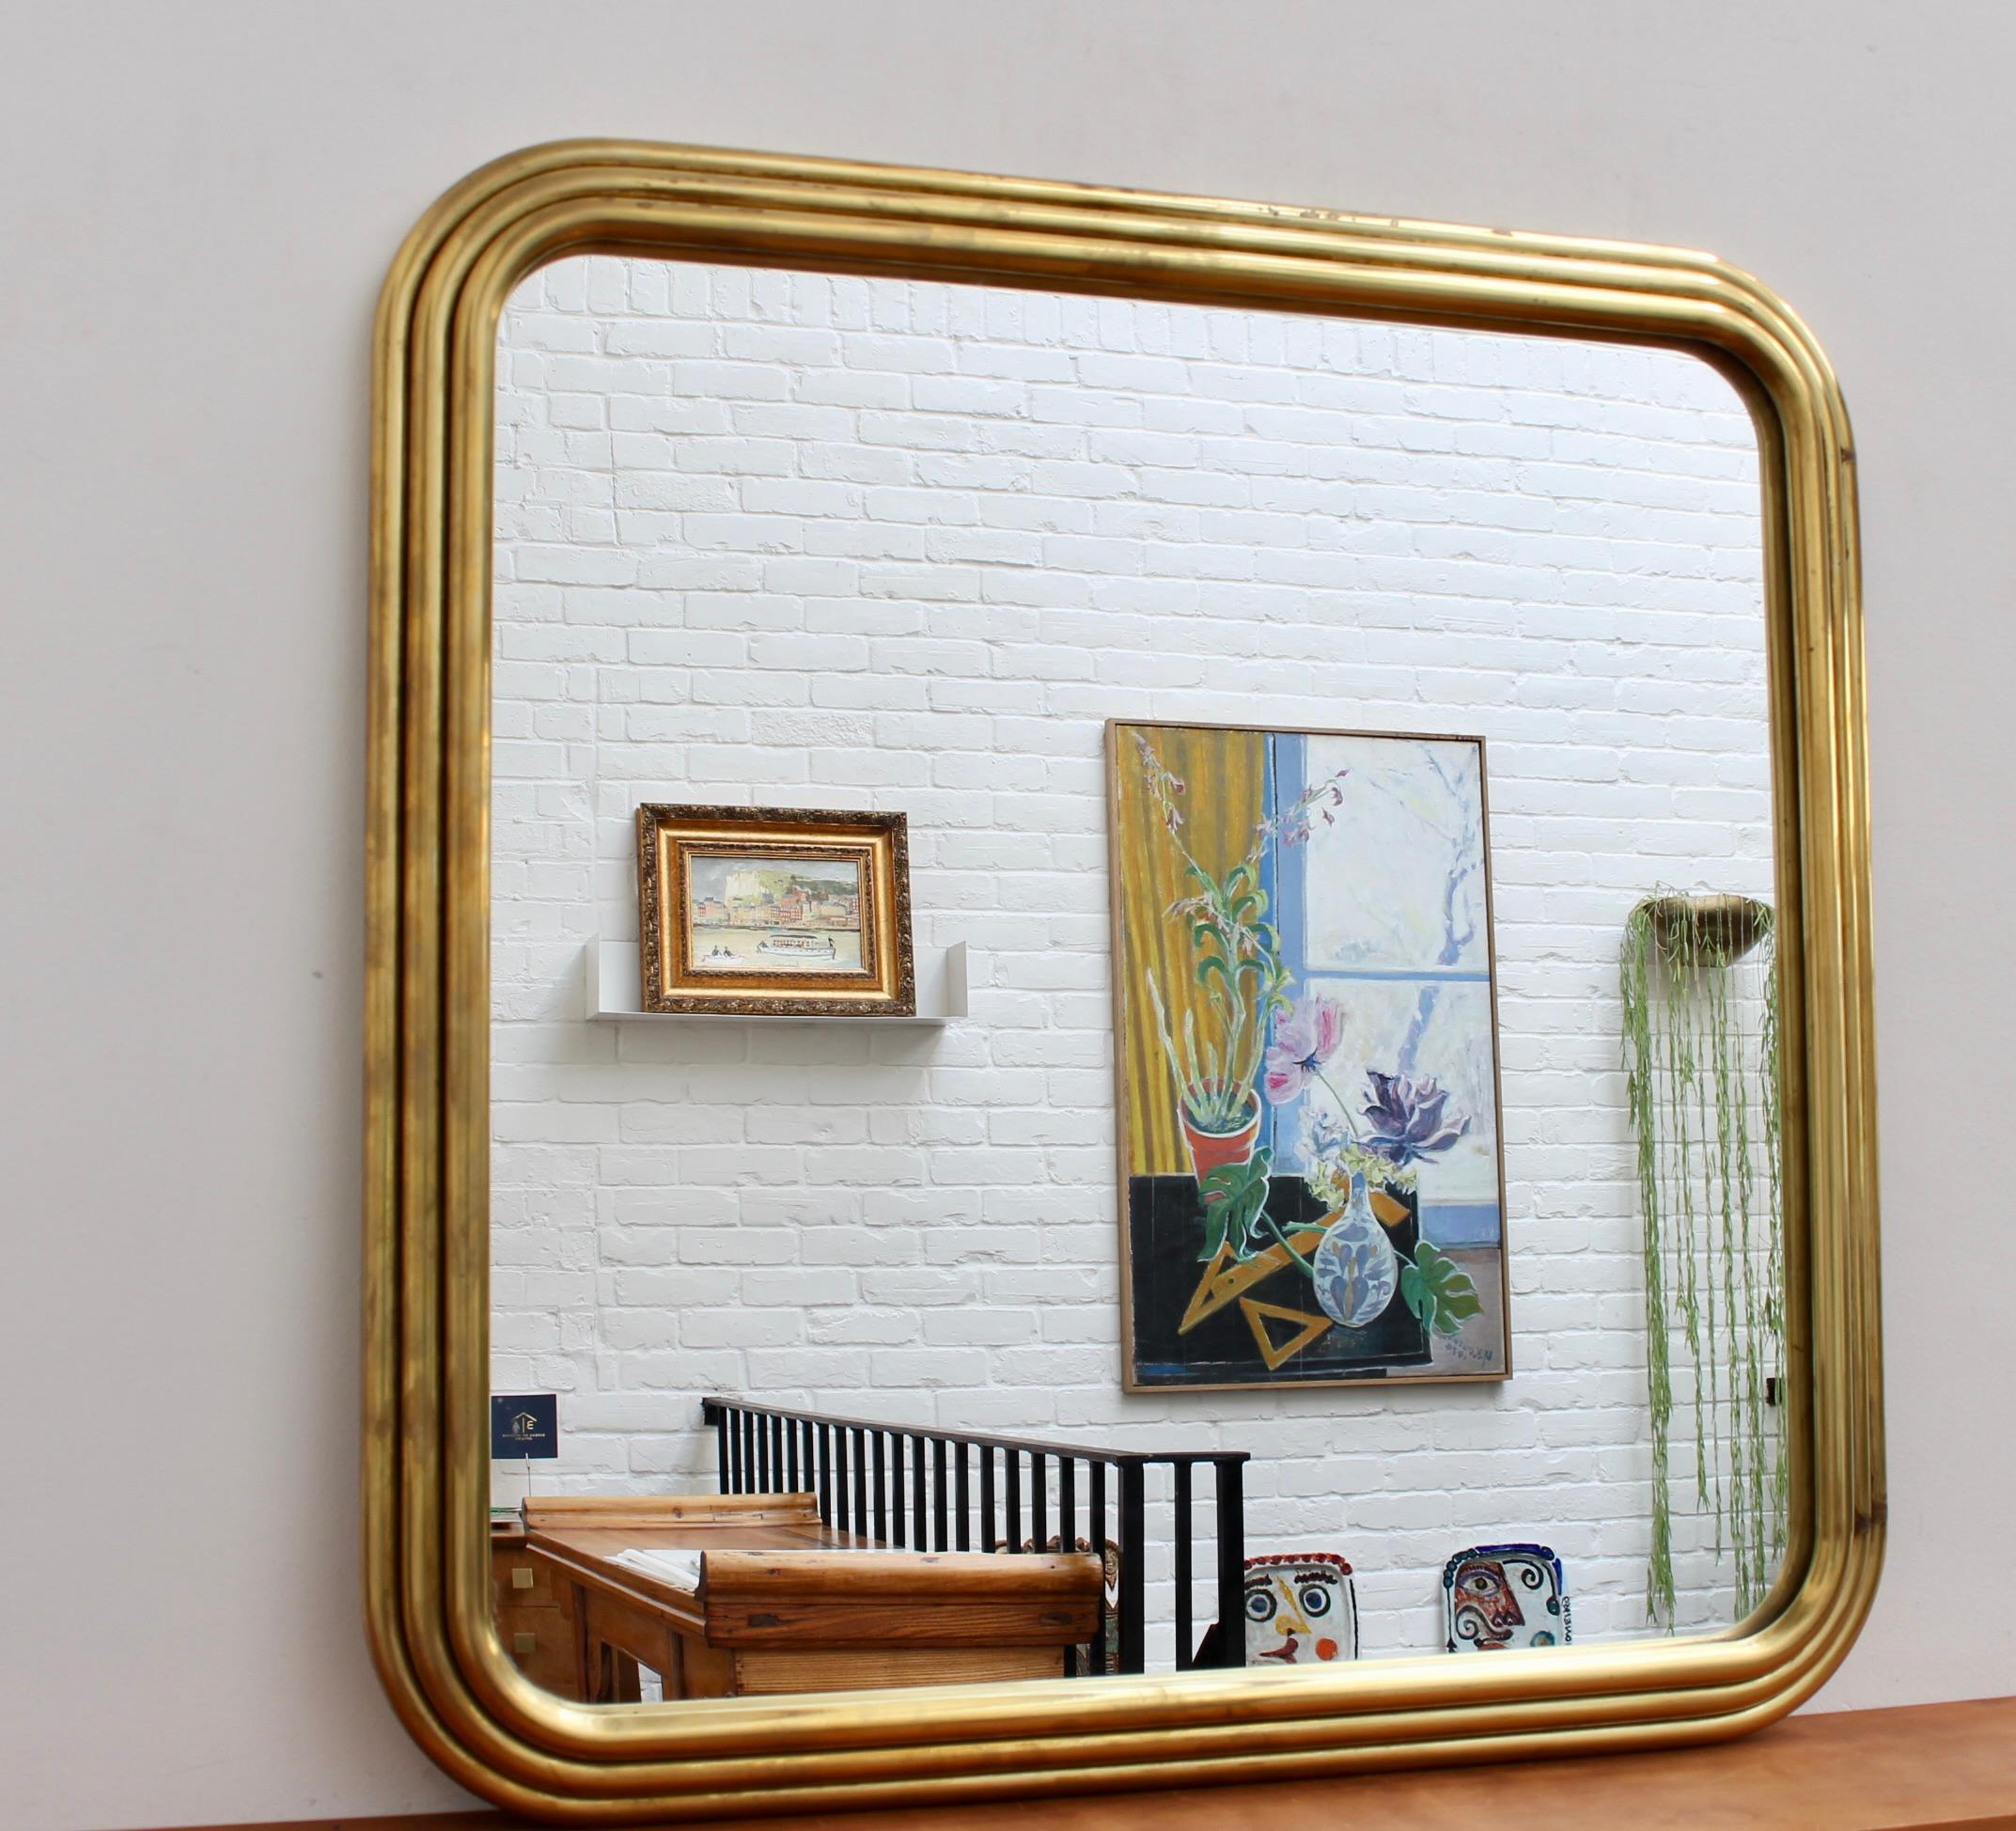 Miroir mural Art Deco italien du milieu du siècle avec cadre en laiton (vers les années 1960). Le miroir est carré avec des bords sensuellement incurvés et un cadre art déco avec des motifs tubulaires répétitifs. Très élégant et distinctif avec